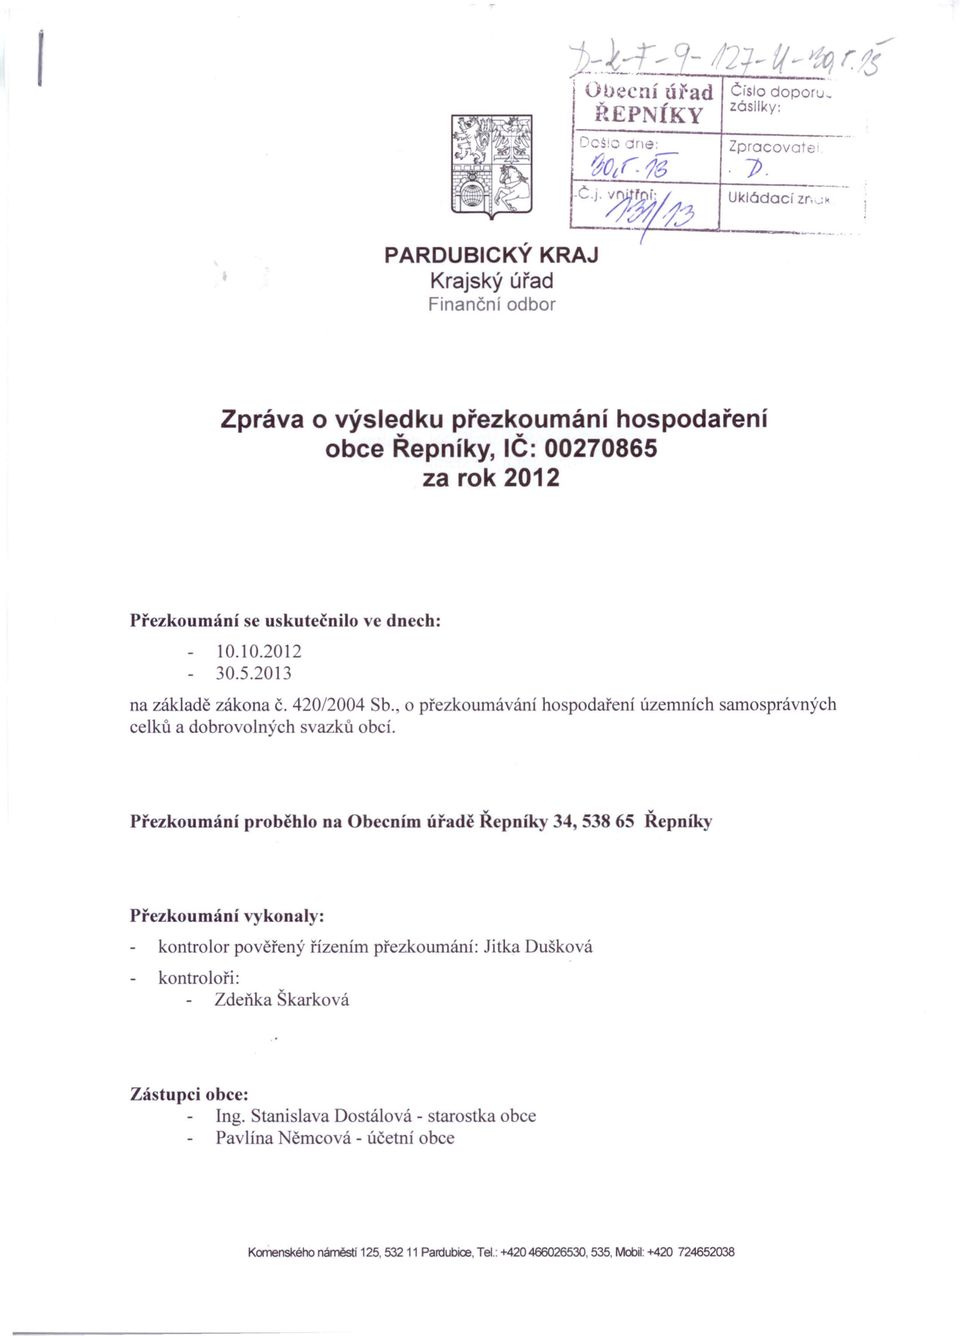 42012004 Sb., o přezkoumávání celků a dobrovolných svazků obcí.